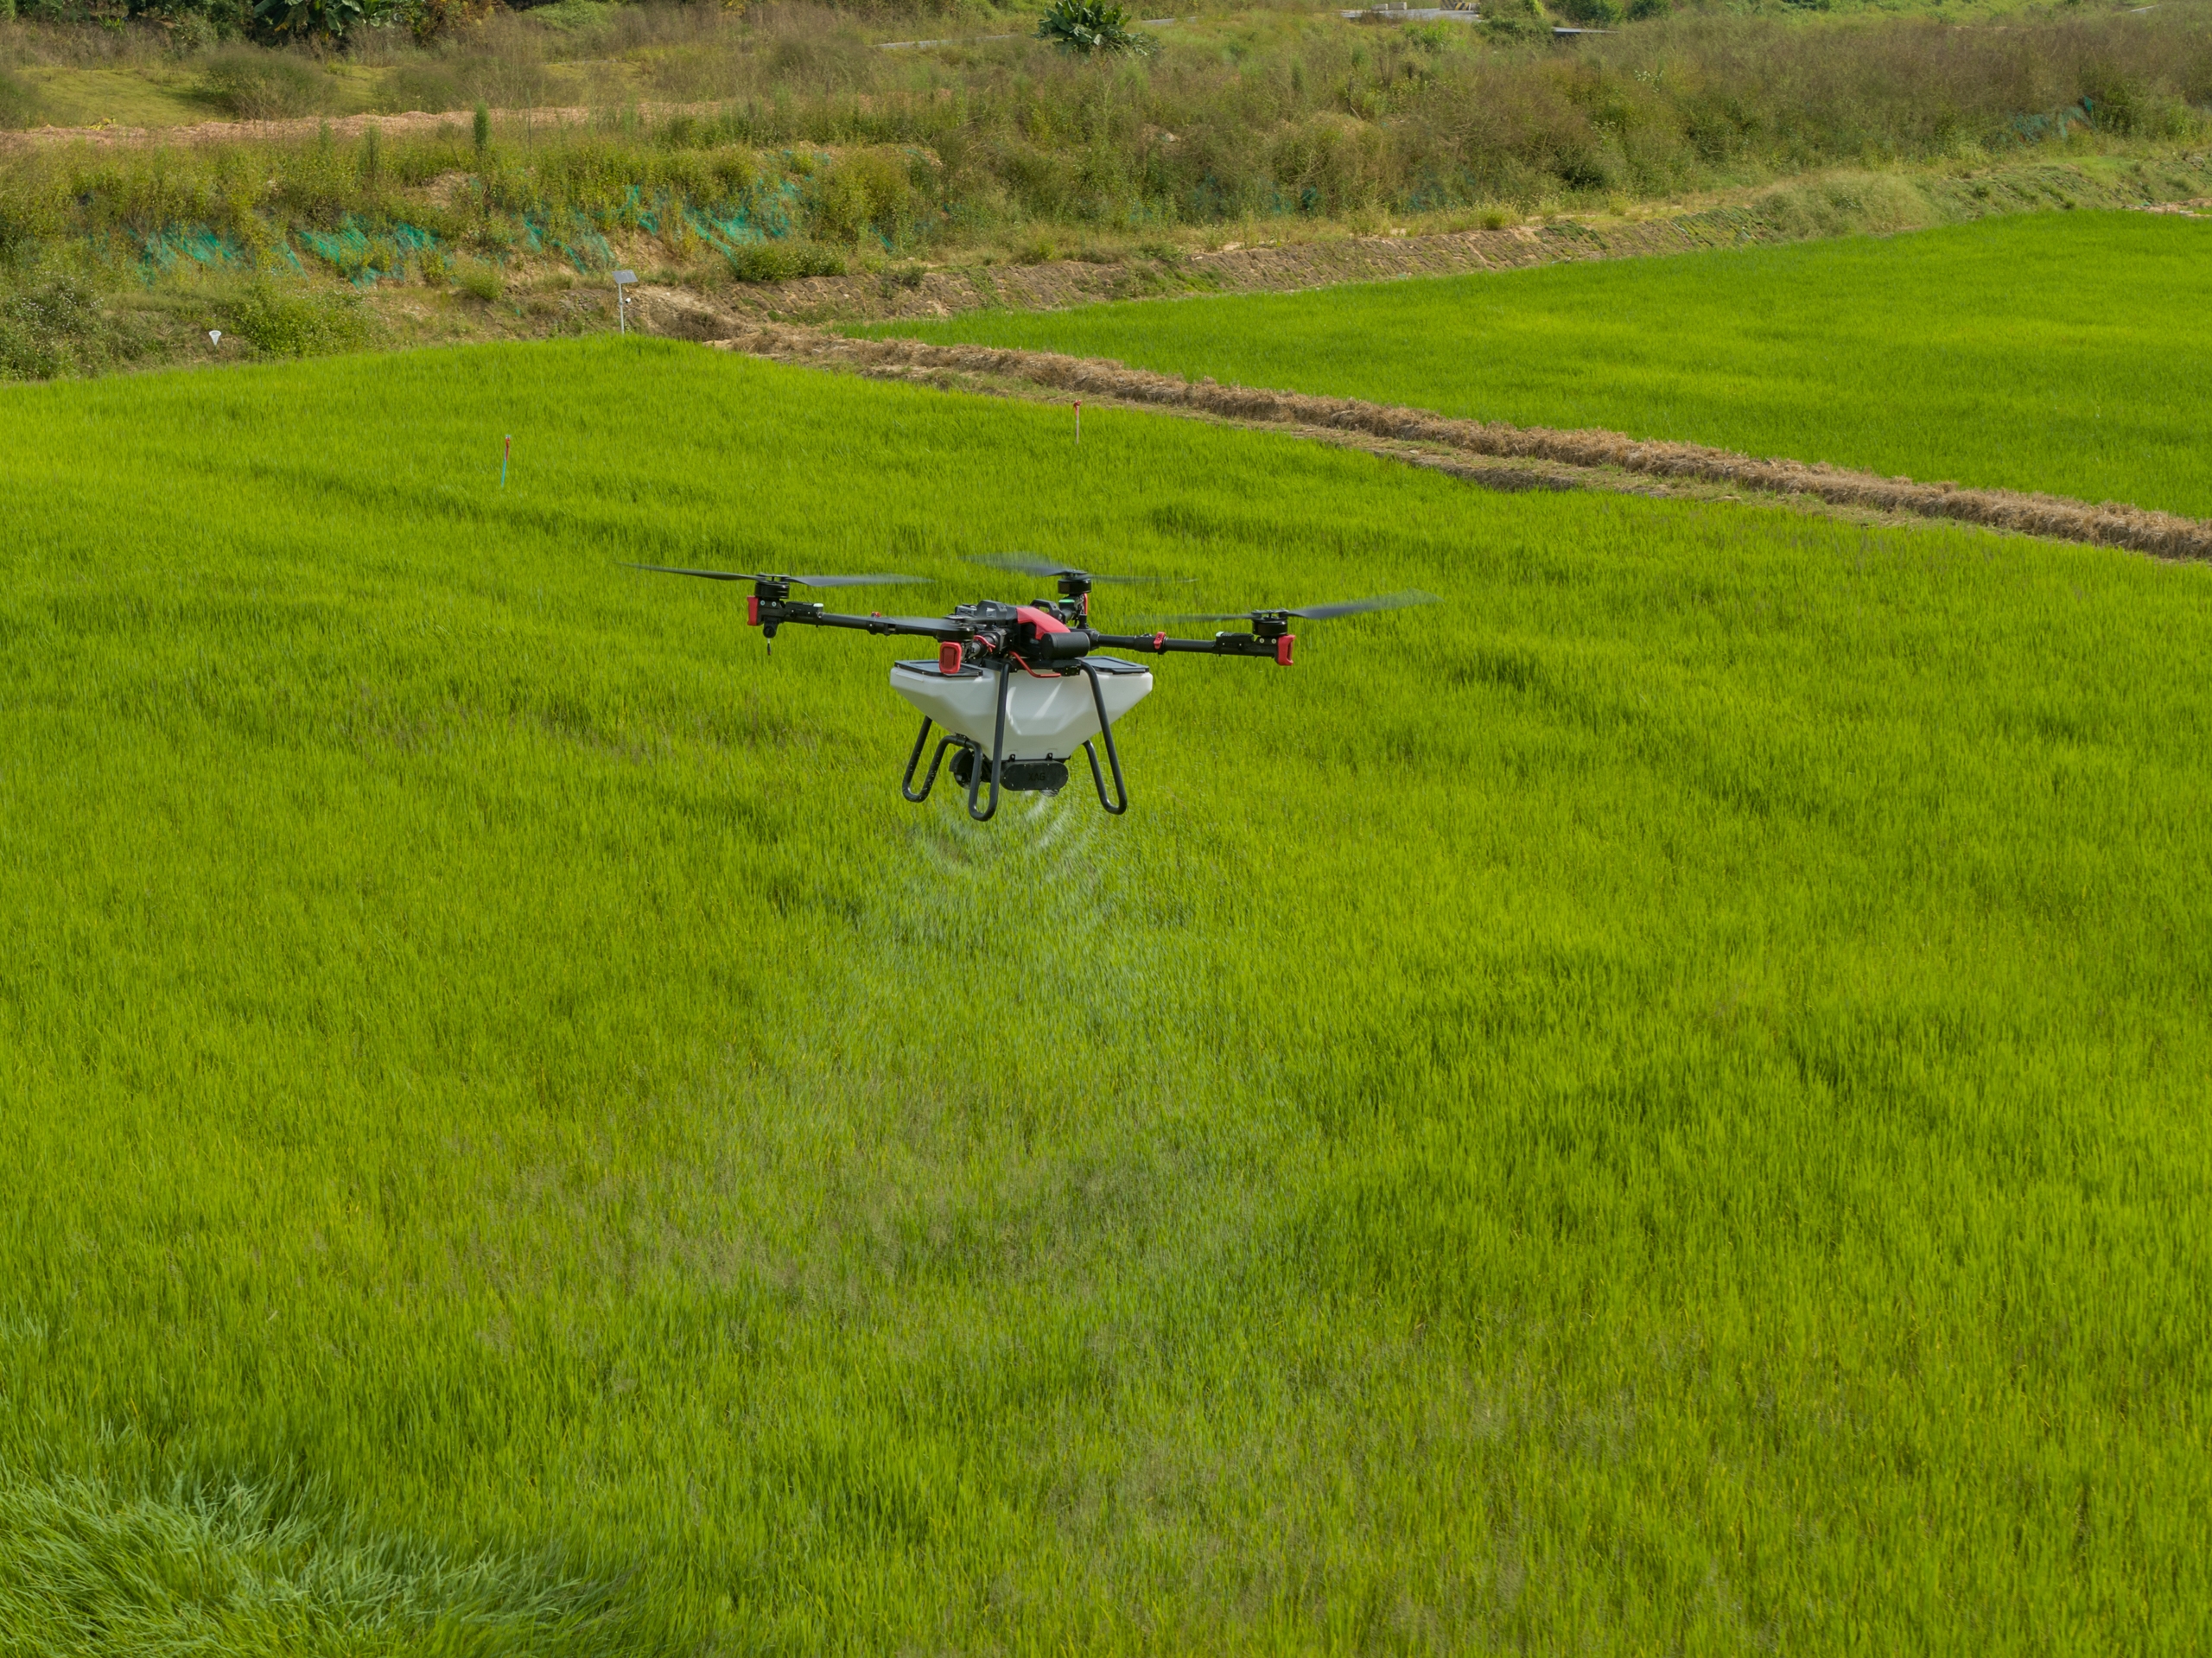 Nông dân 4.0 ứng dụng thiết bị bay không người lái trong sản xuất nông nghiệp